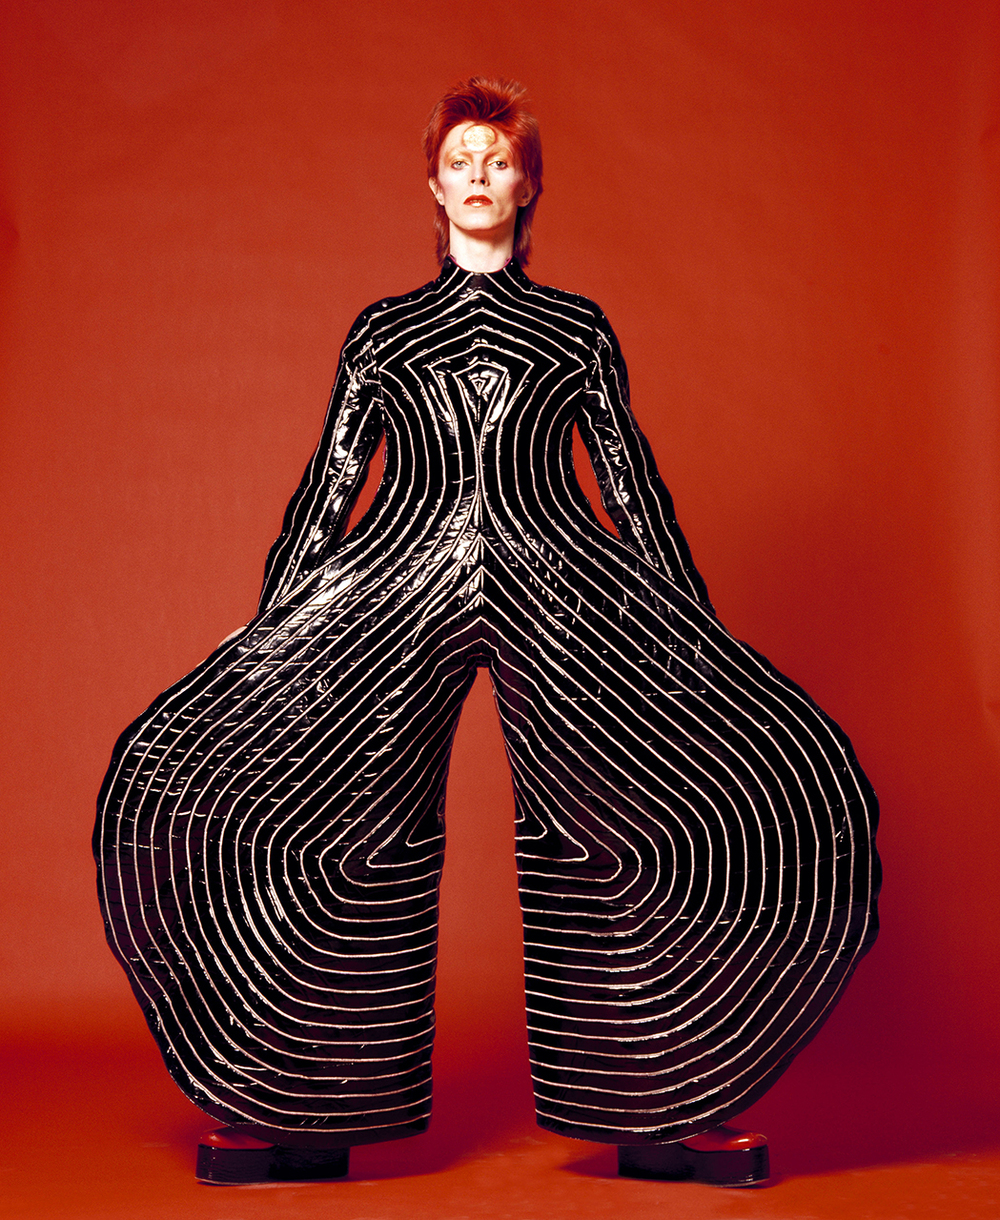 Hacia fuera corona meditación A Review of “David Bowie Is” — Fashion Projects